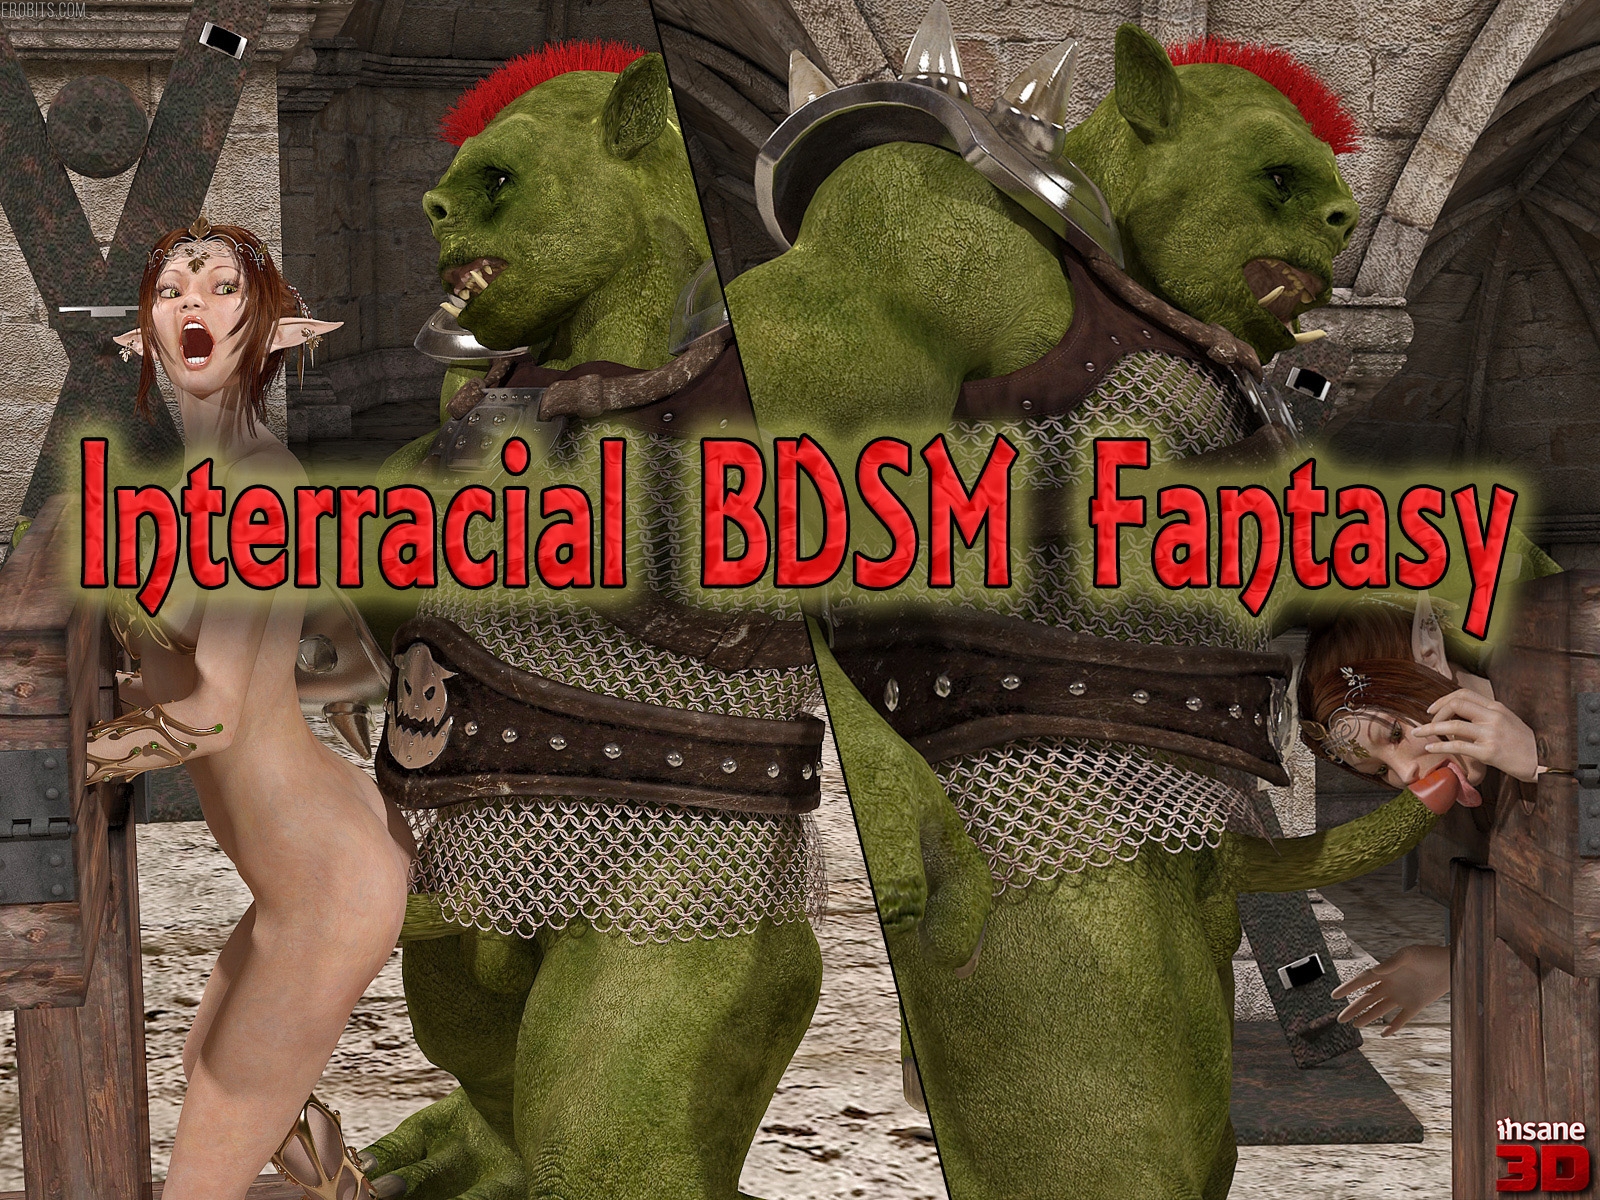 Interracial BDSM Fantasy 👉 https://erobits.com/bdsm/interracial-bdsm-fantasy.html